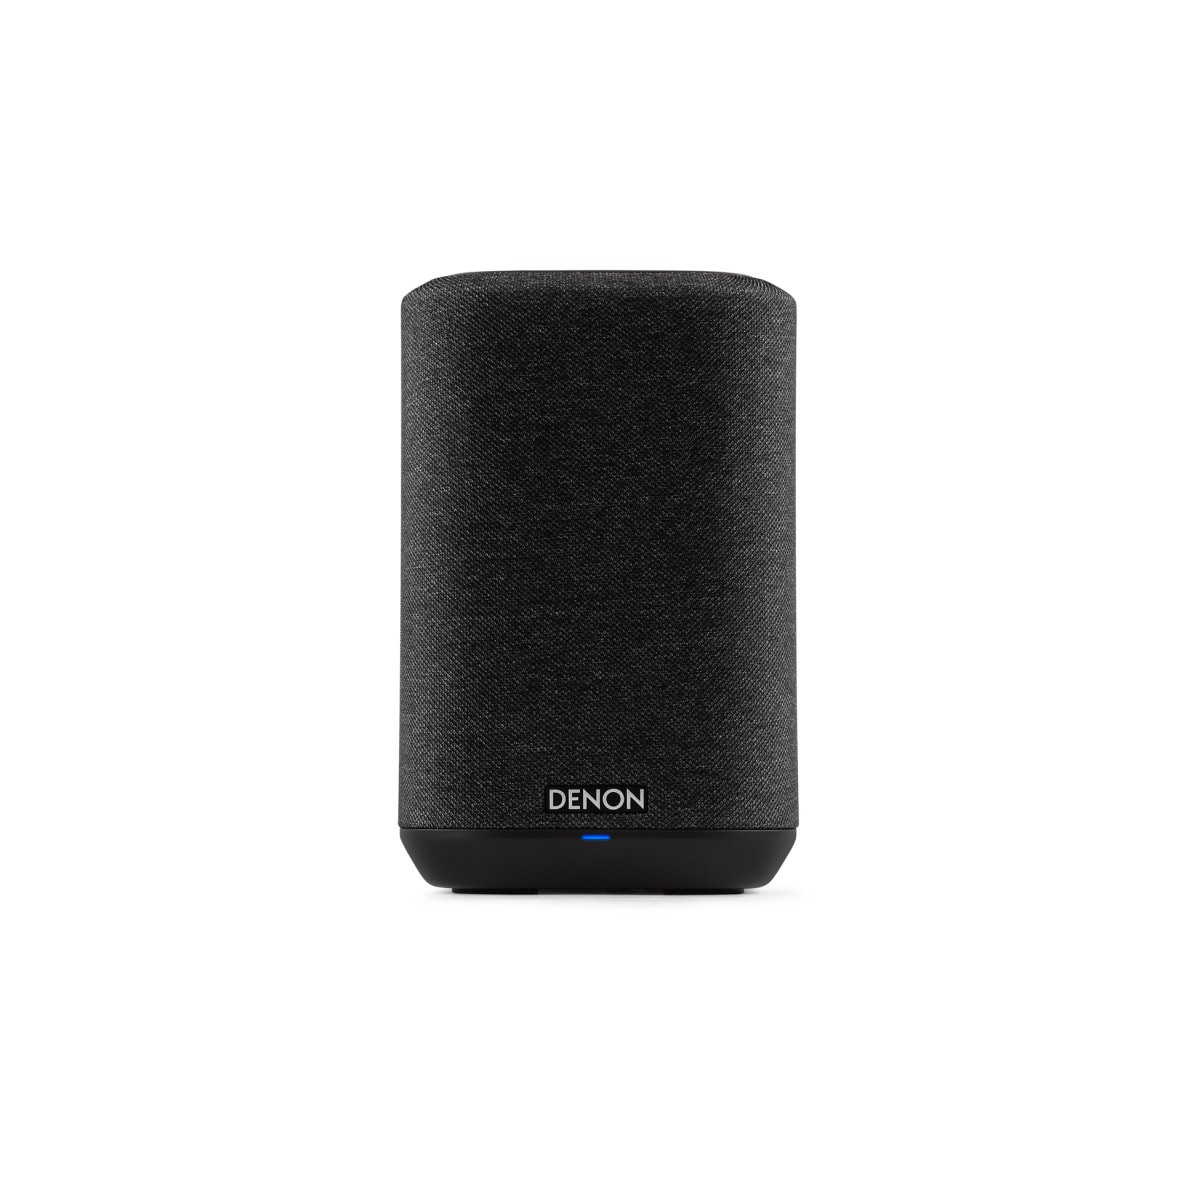 Hier sehen Sie den Artikel Home 150 Wireless Speaker black aus der Kategorie Wireless speaker. Dieser Artikel ist erhältlich bei cebrands.ch